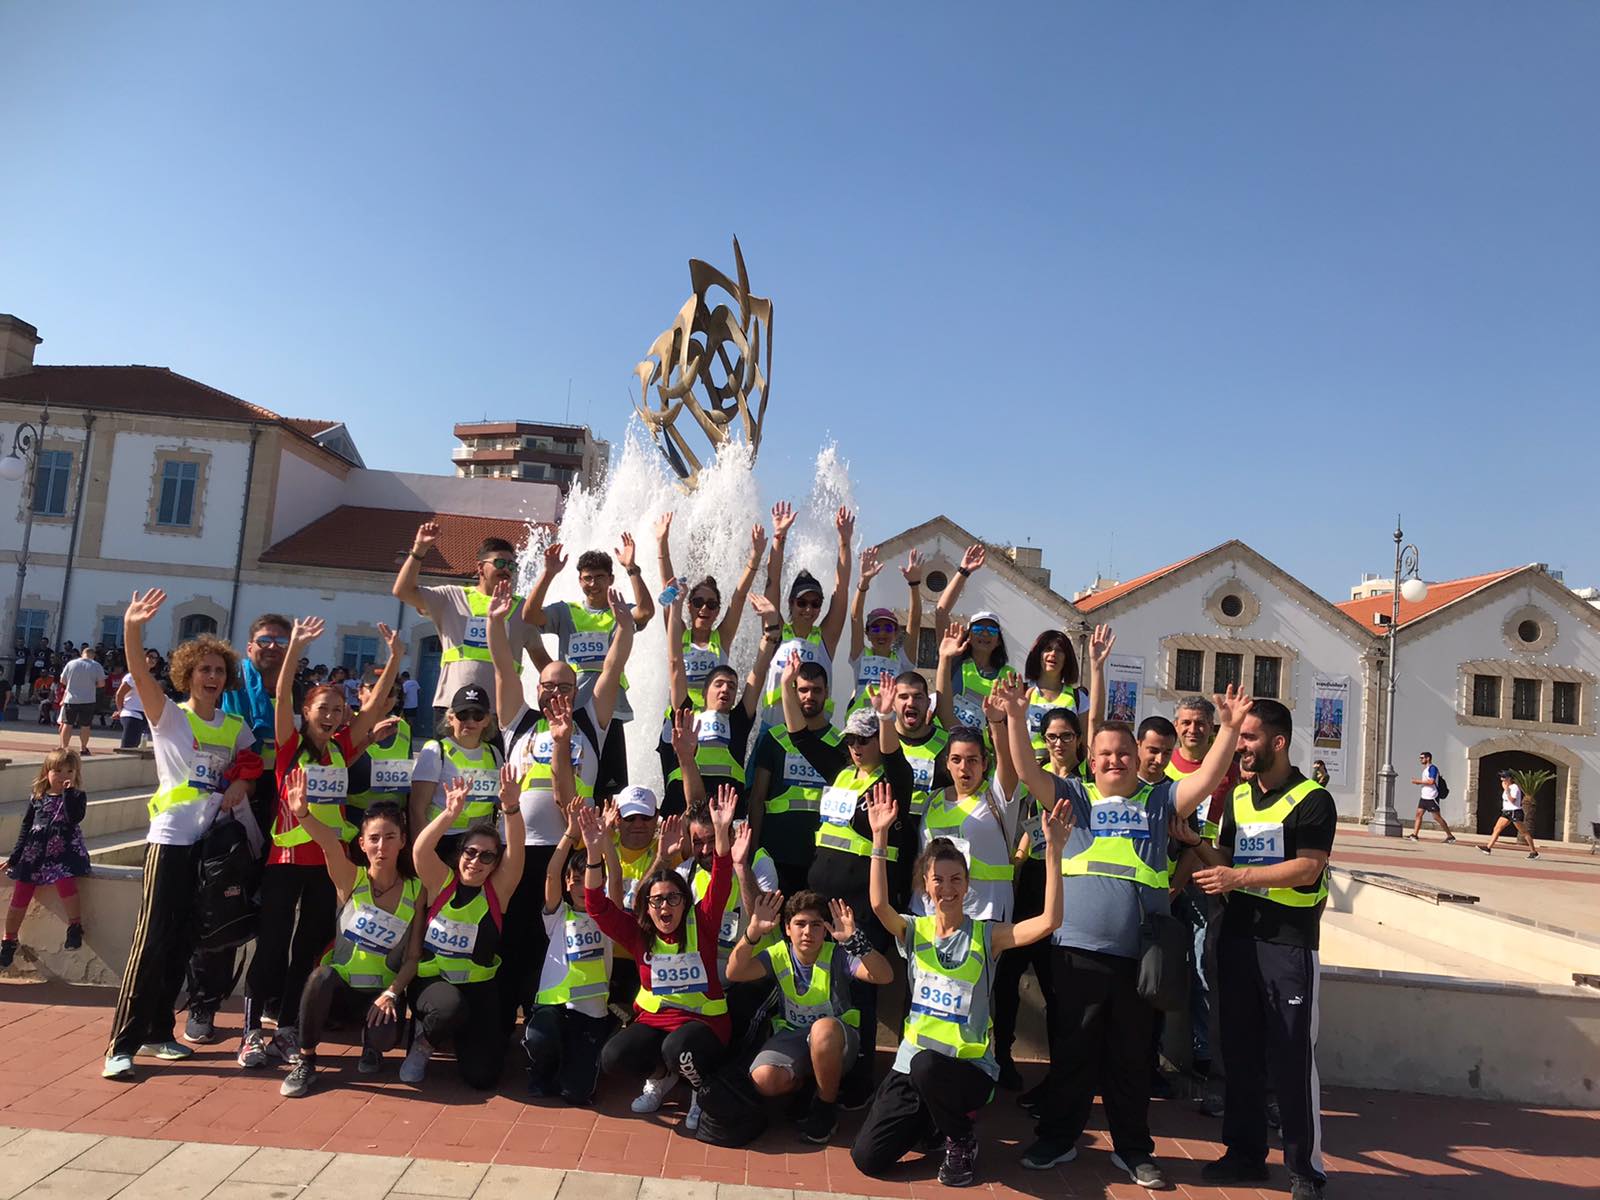 15 άτομα με οπτική αναπηρία συμμετείχαν στον 3ο Radisson Blu Διεθνή Μαραθώνιο Λάρνακας